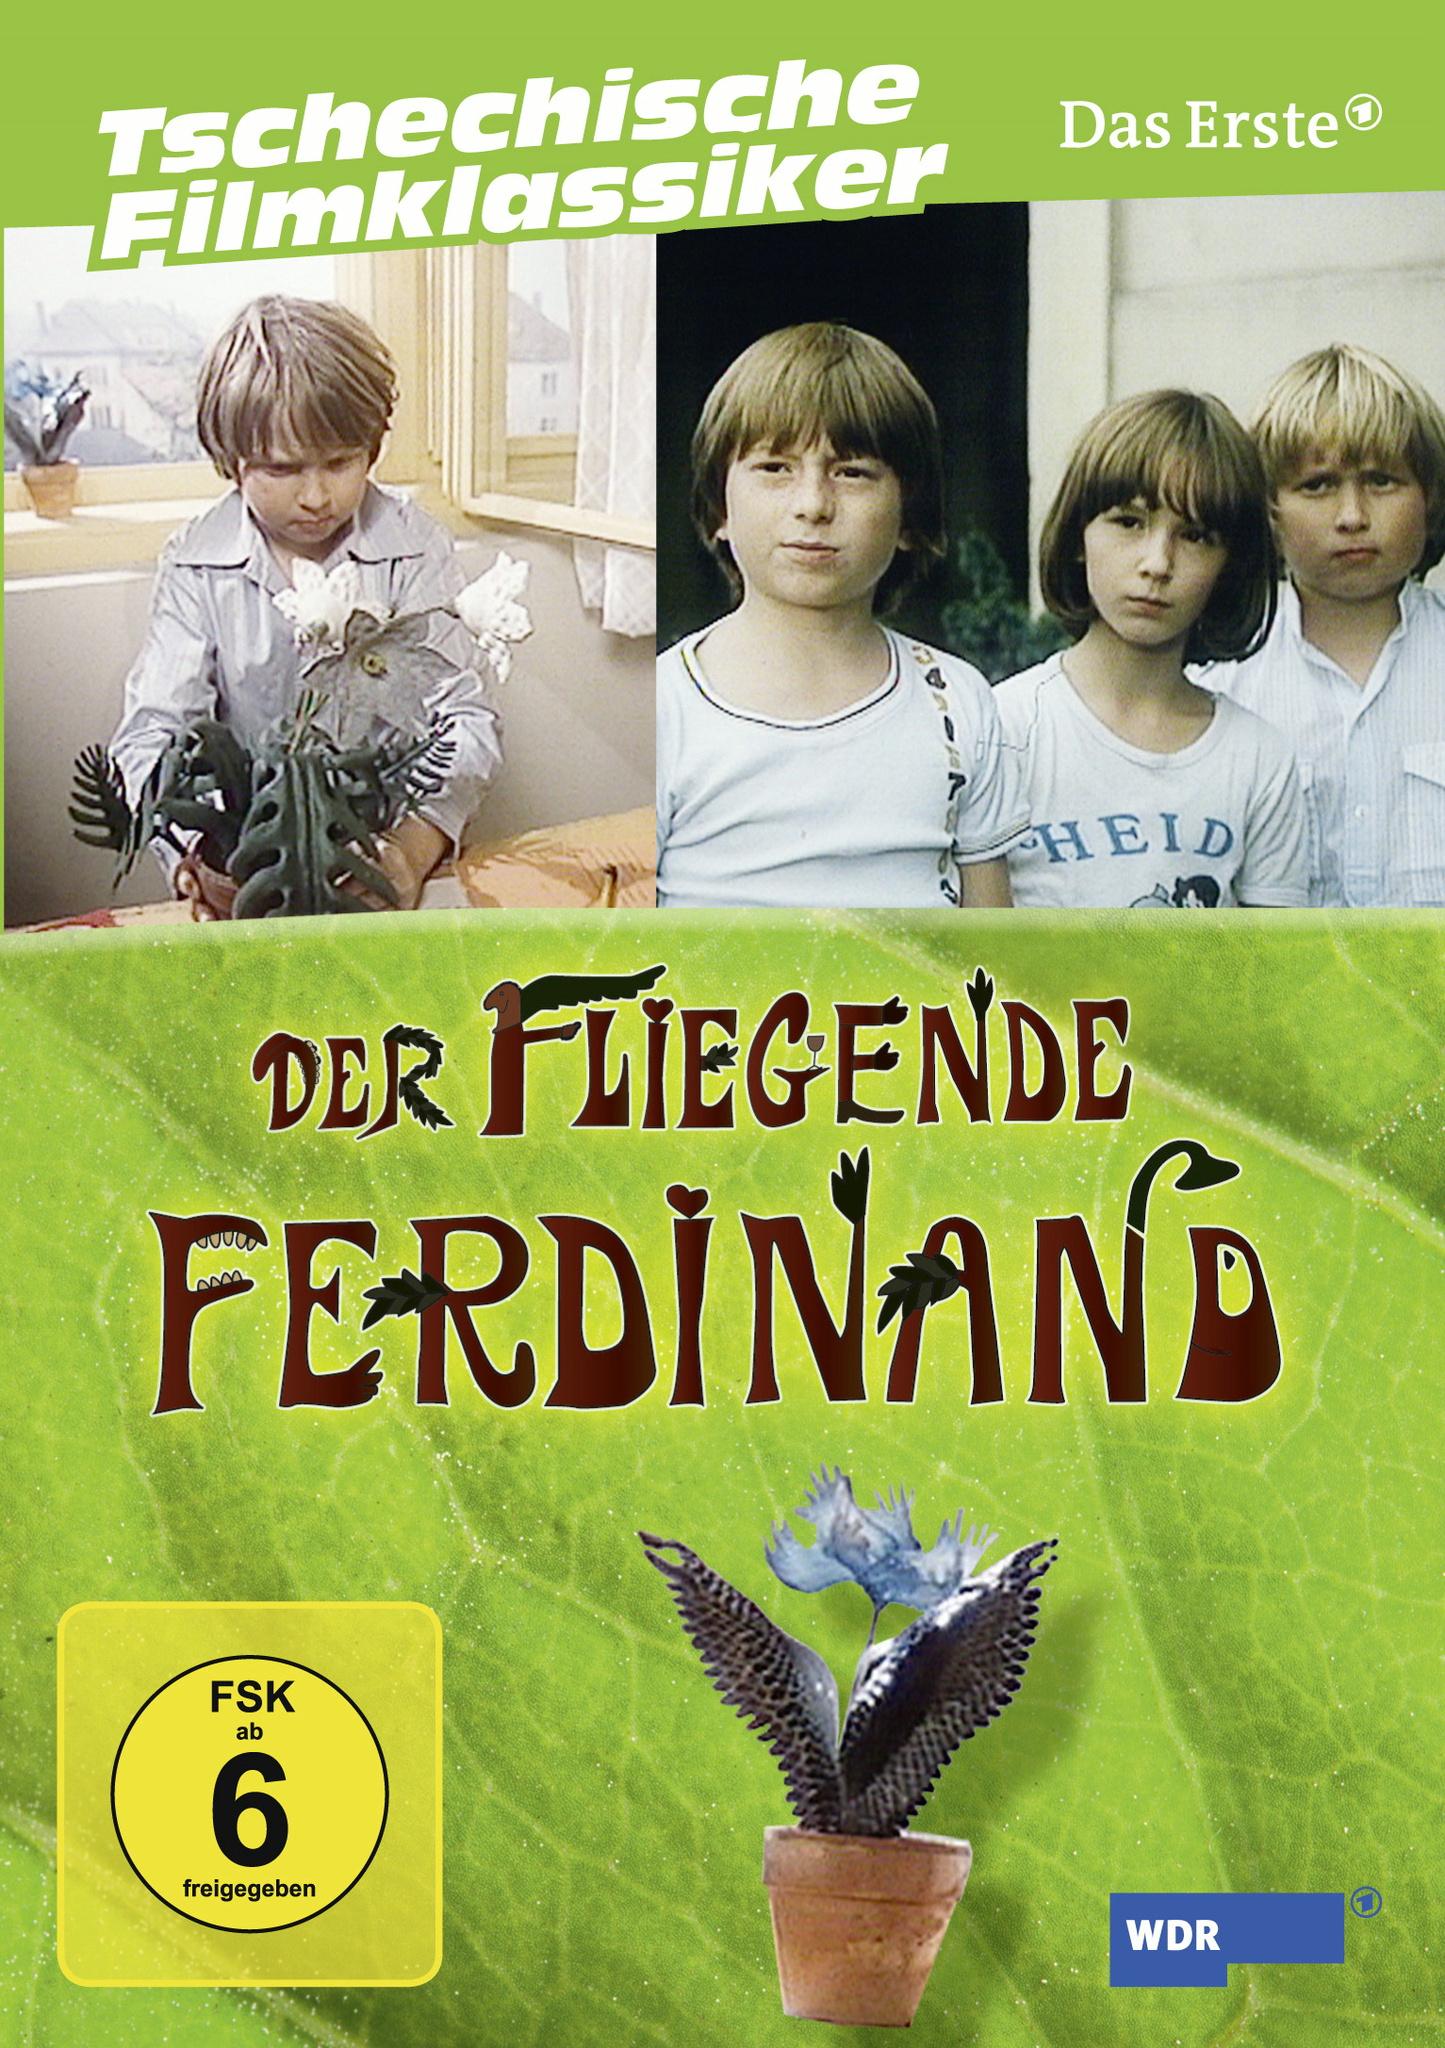 Wer streamt Der fliegende Ferdinand? Serie online schauen